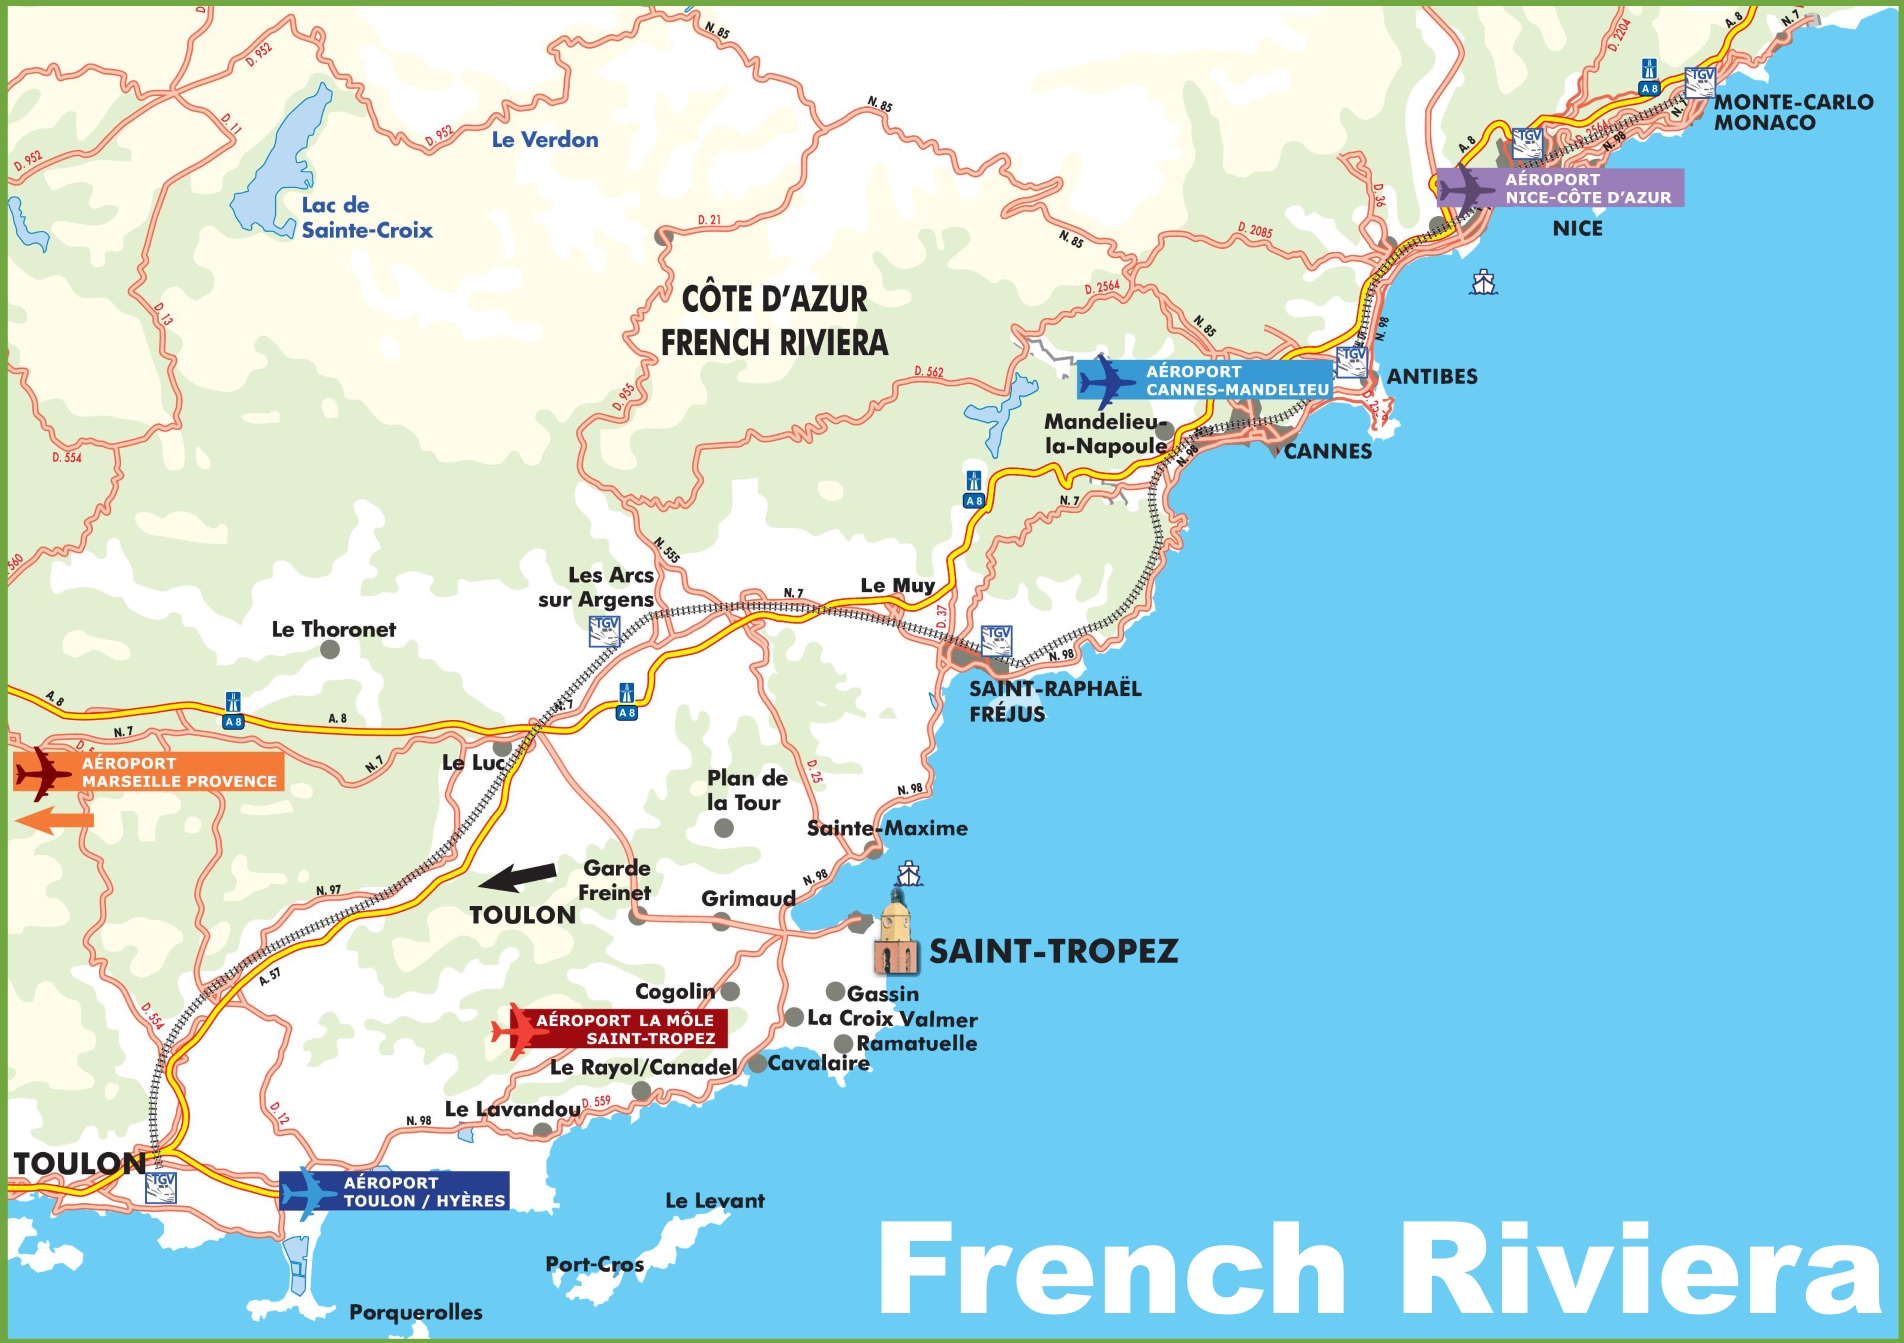 Afbeeldingsresultaat voor french riviera